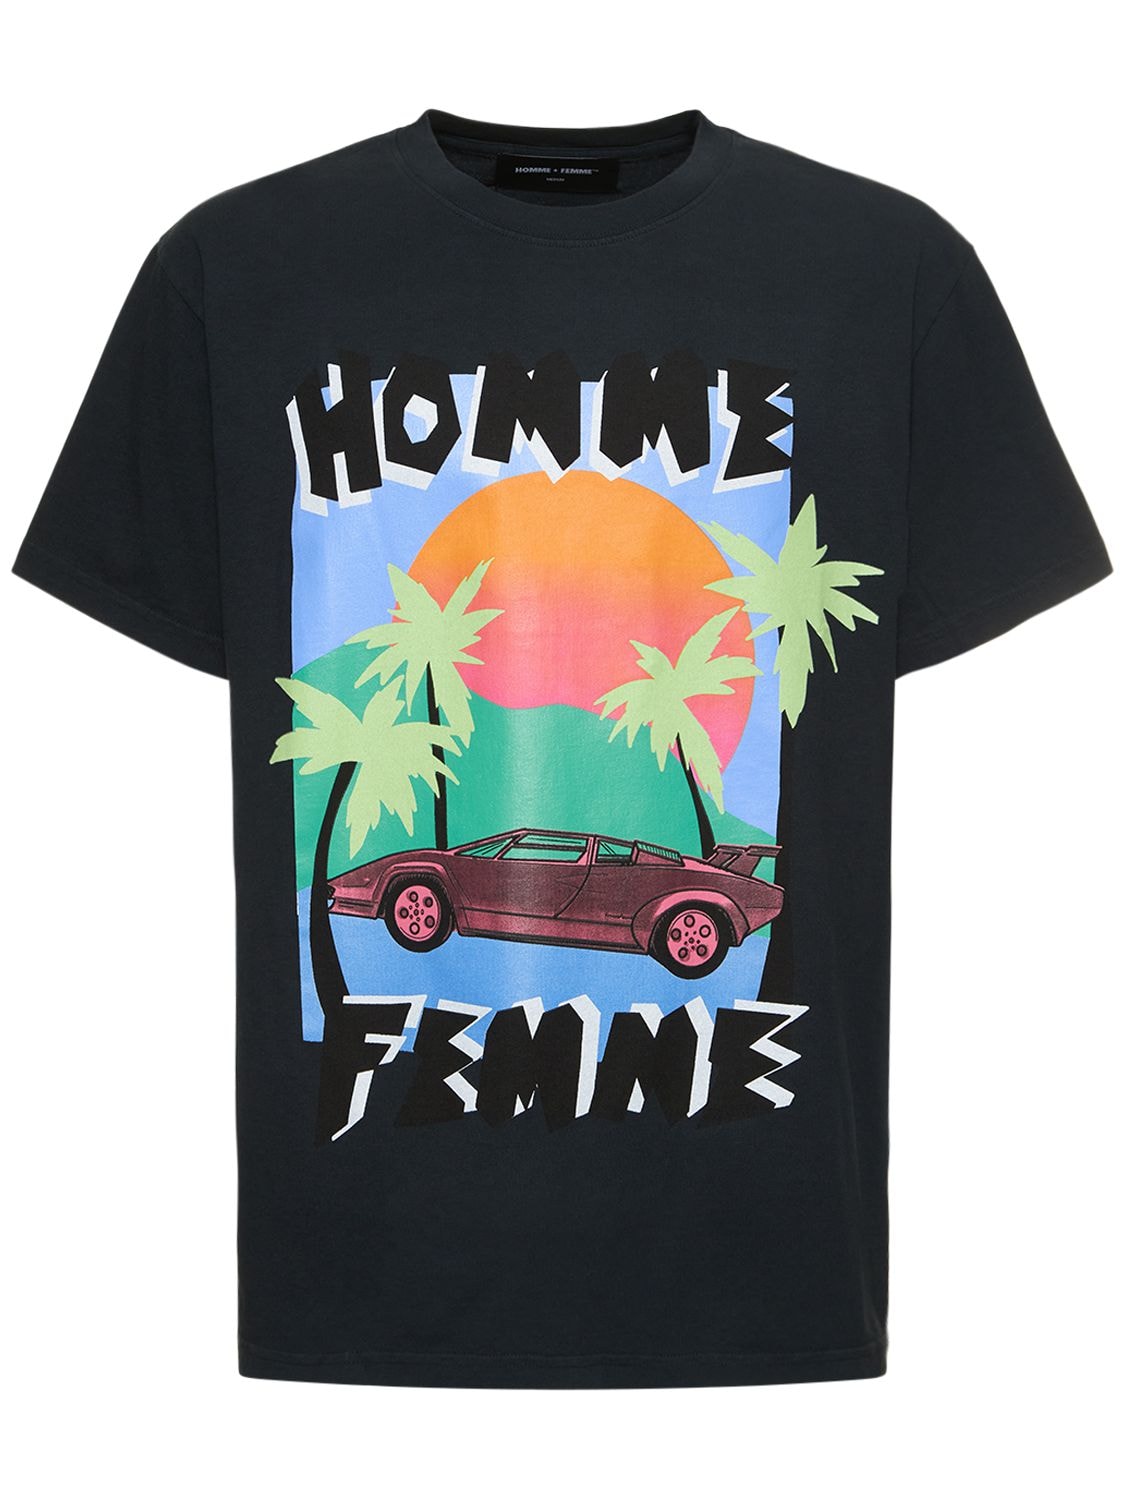 HOMME + FEMME LA Paper Cut Cotton Jersey T-shirt